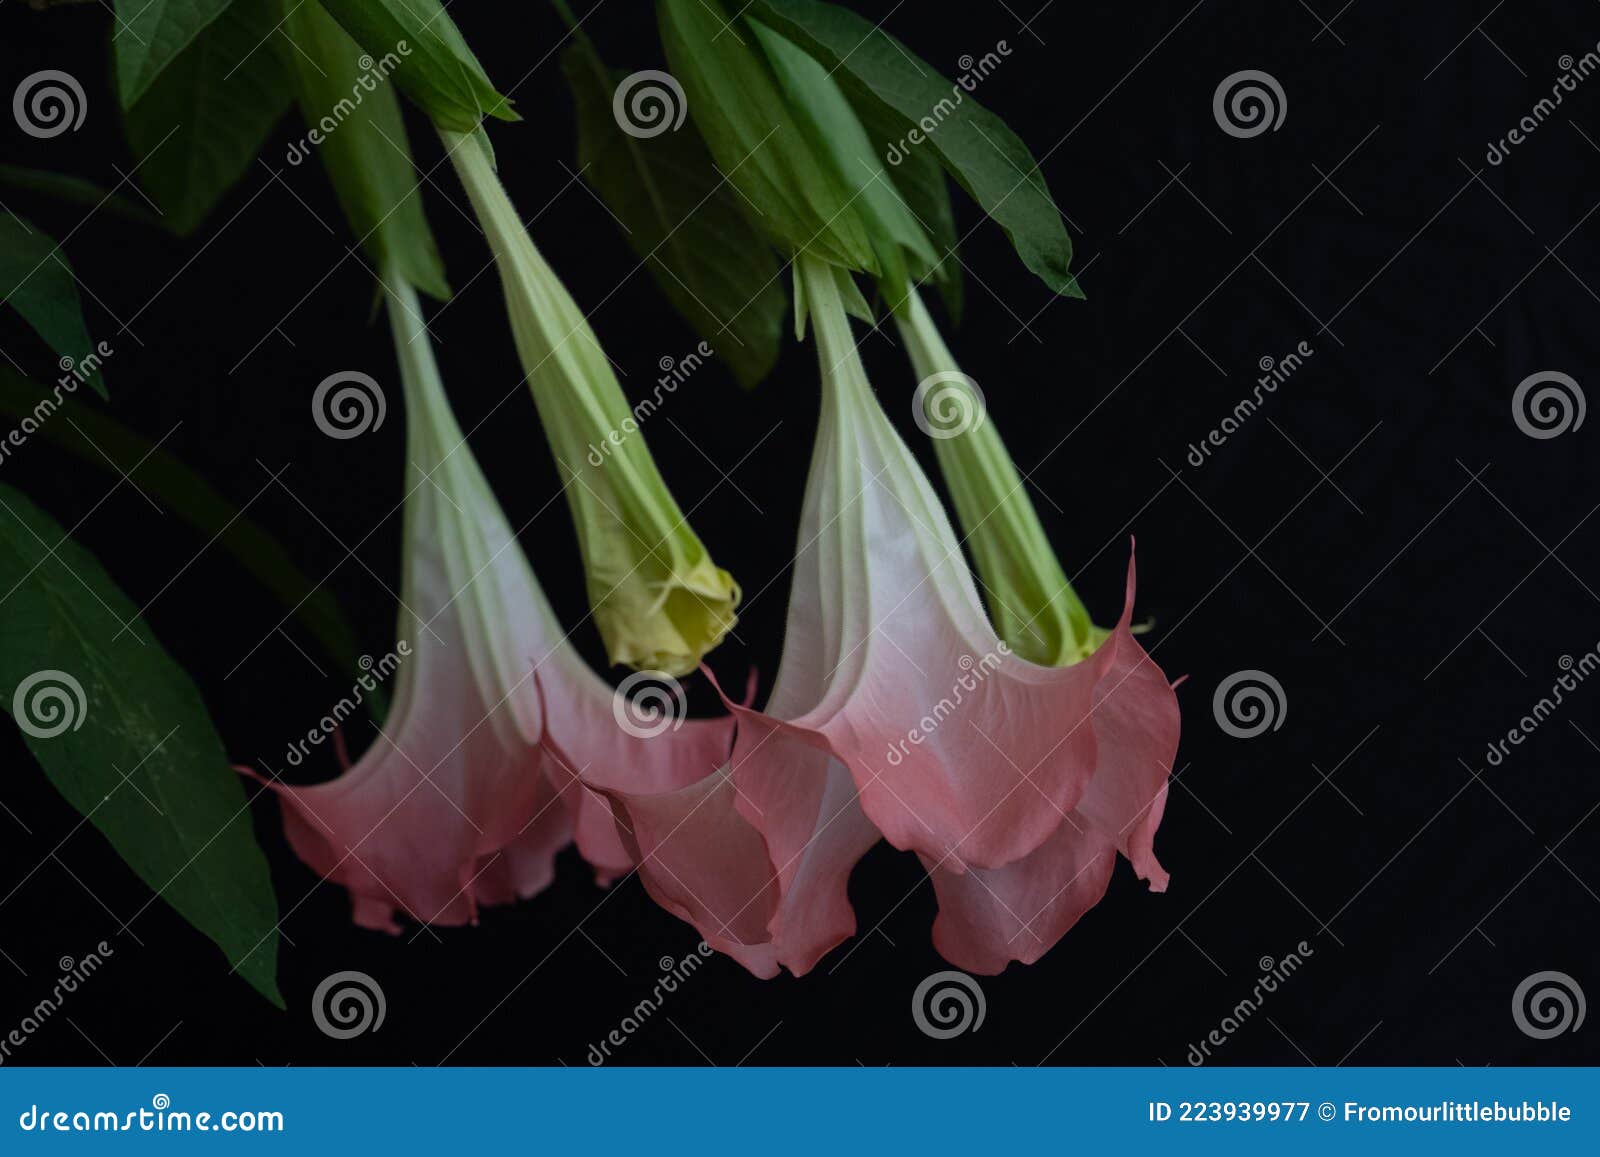 cubanola domingensis in full bloom